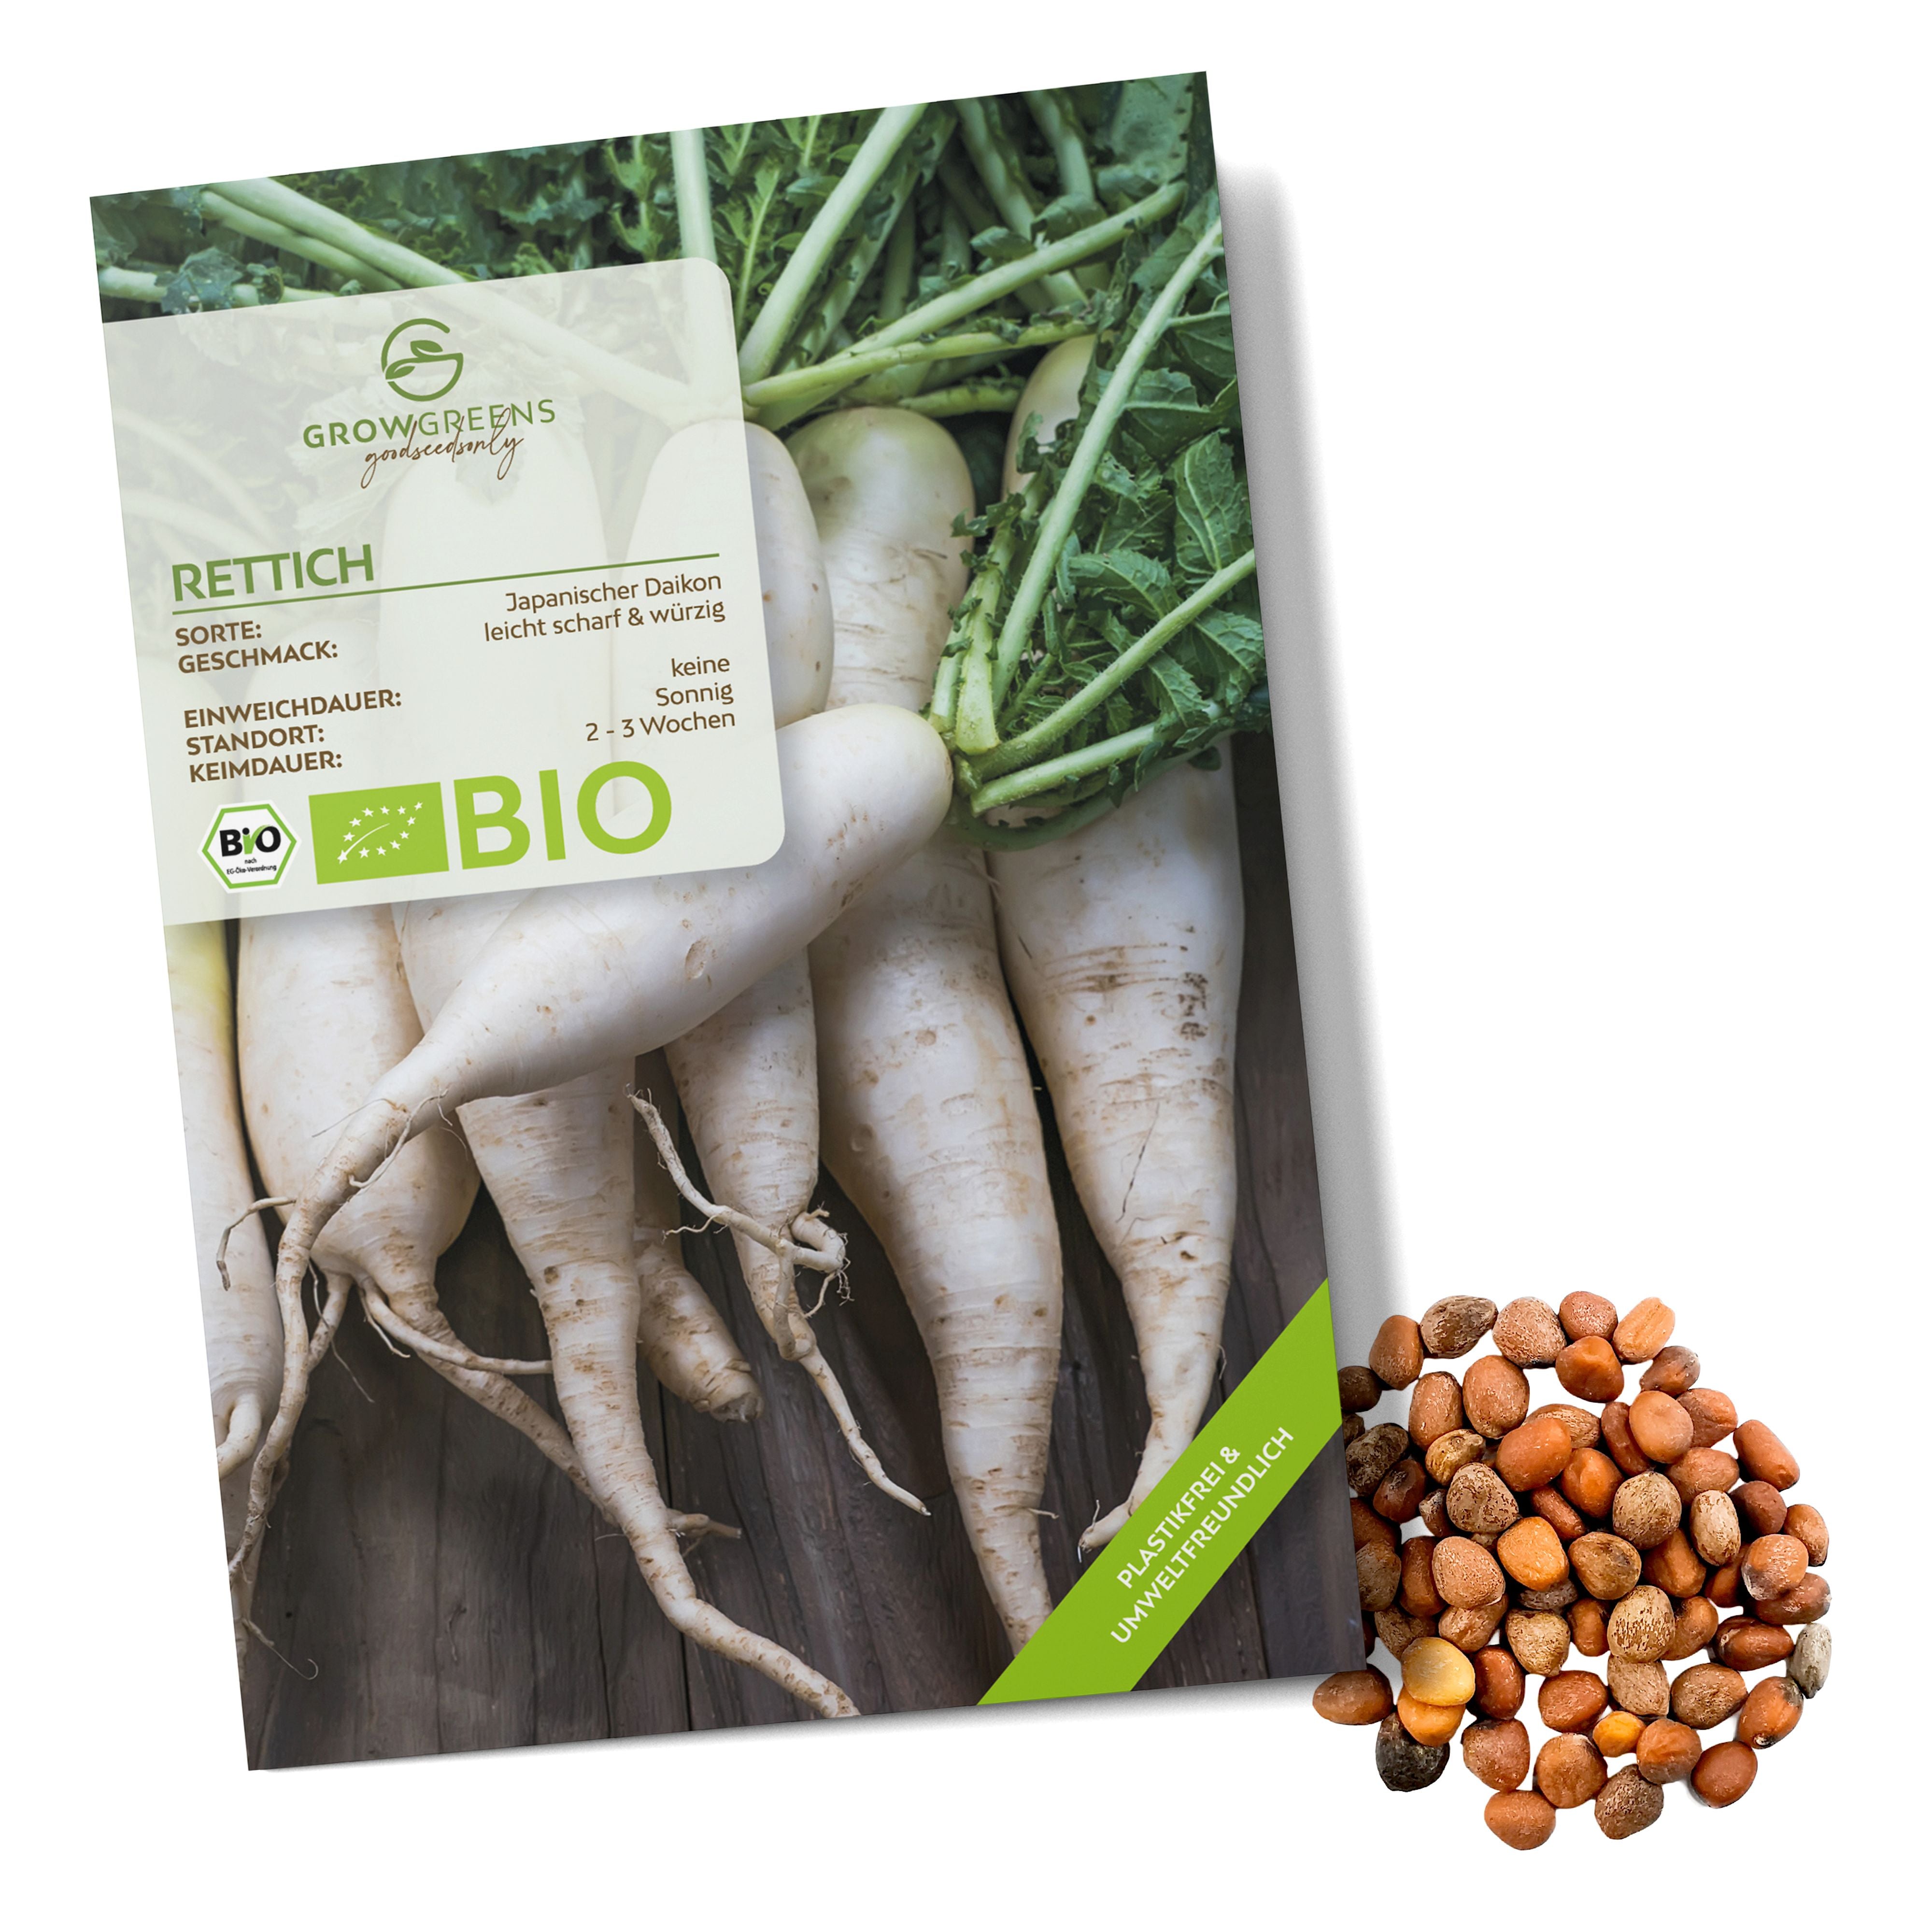 BIO Rettich Samen (Japanischer Daikon) - Rettich Saatgut aus biologischem Anbau (50 Korn)